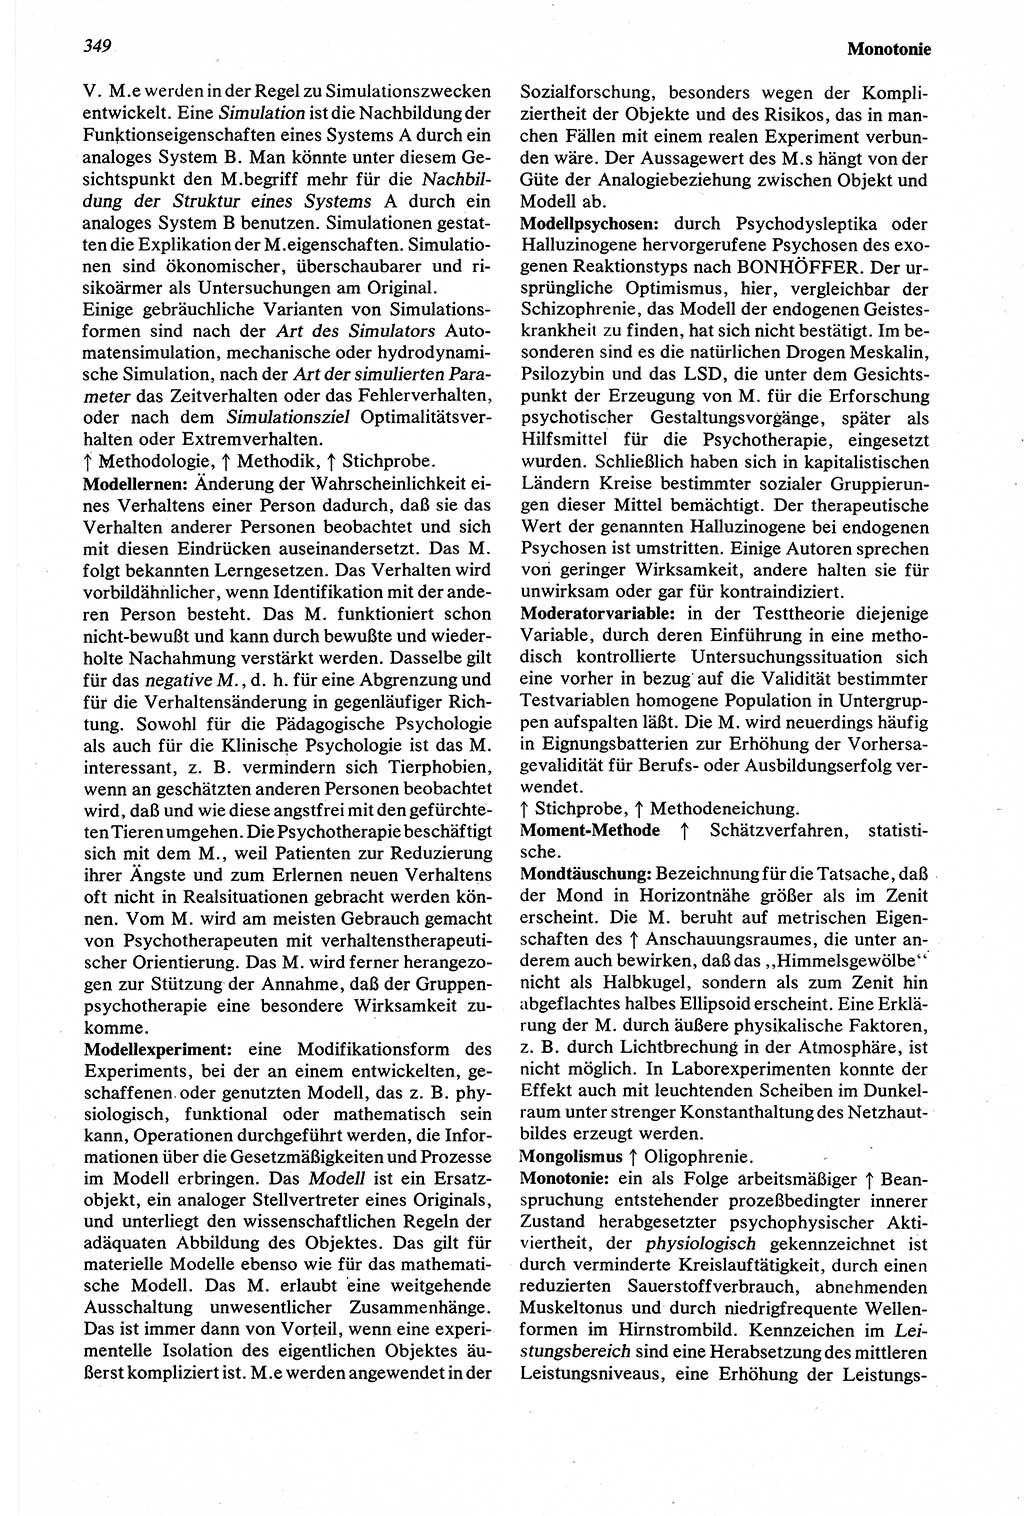 Wörterbuch der Psychologie [Deutsche Demokratische Republik (DDR)] 1976, Seite 349 (Wb. Psych. DDR 1976, S. 349)